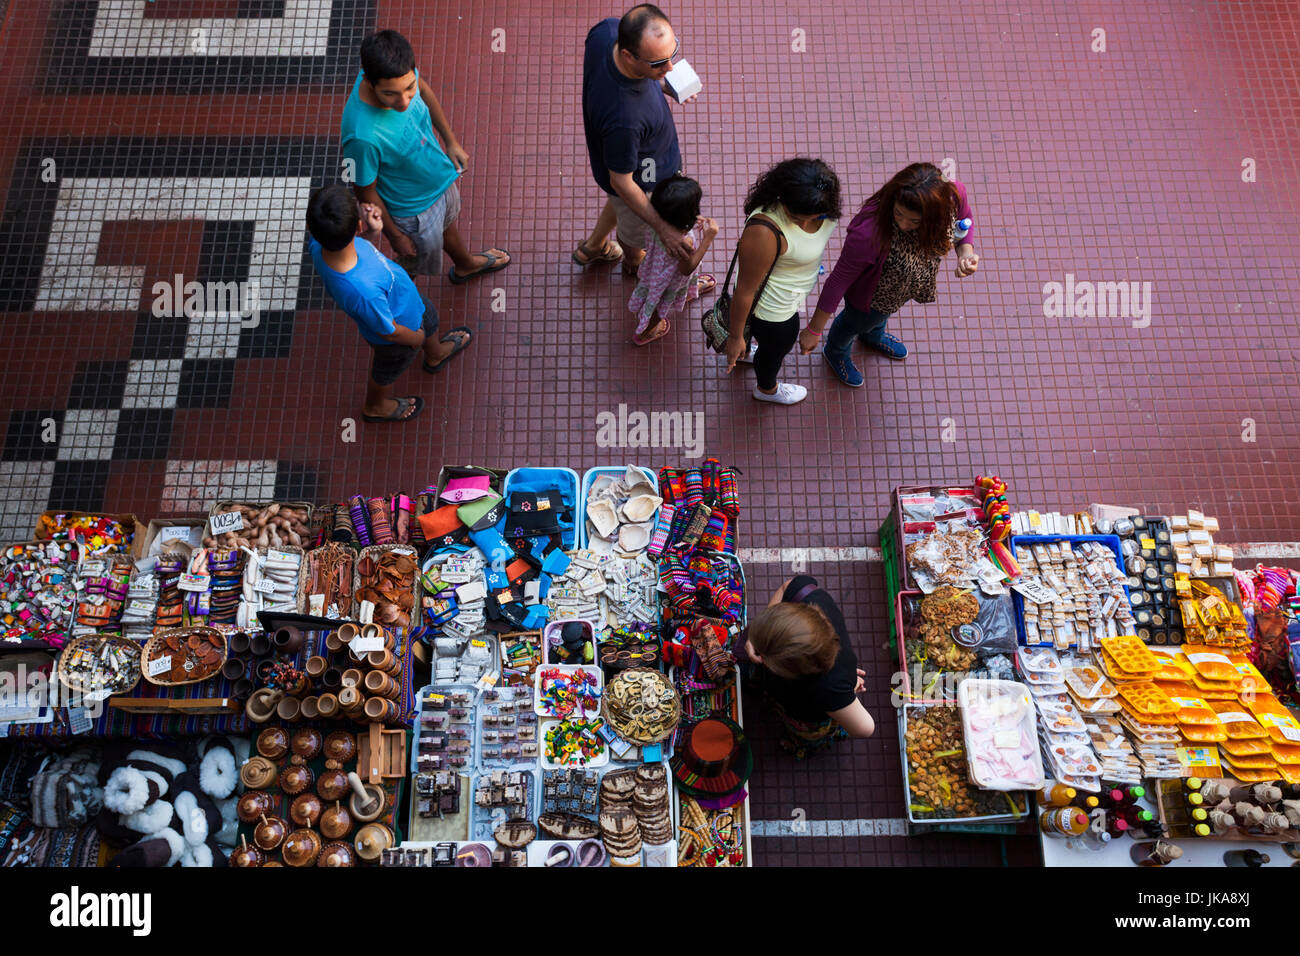 Chile, La Serena, La Recova market, interior, elevated view Stock Photo